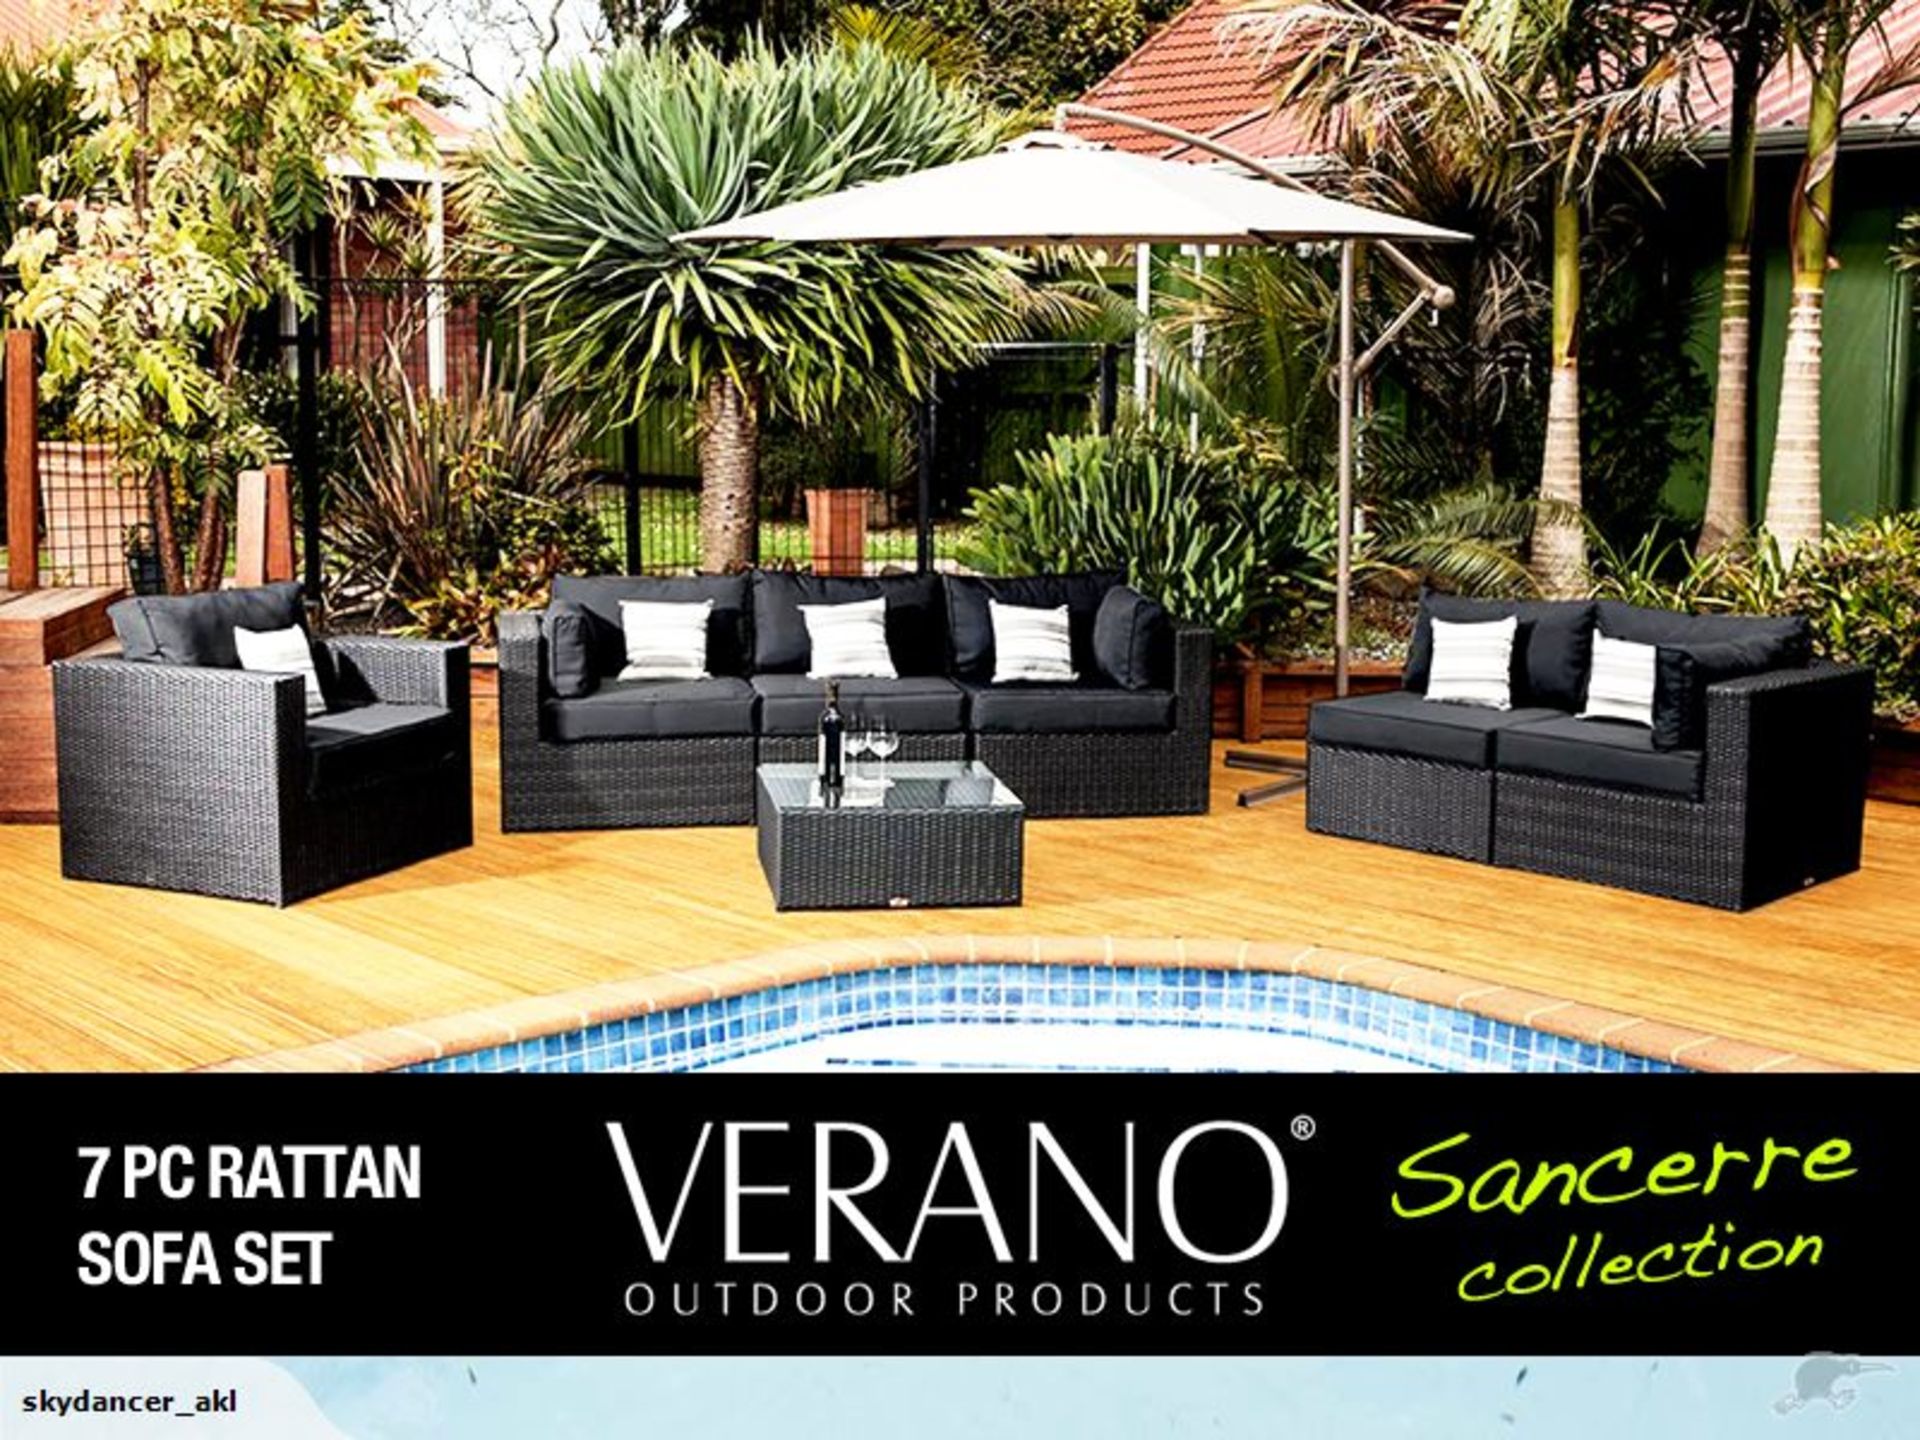 Verano® Sancerre Luxury Rattan Garden Furniture Outdoor Indoor Conservatory Patio Weave Wicker